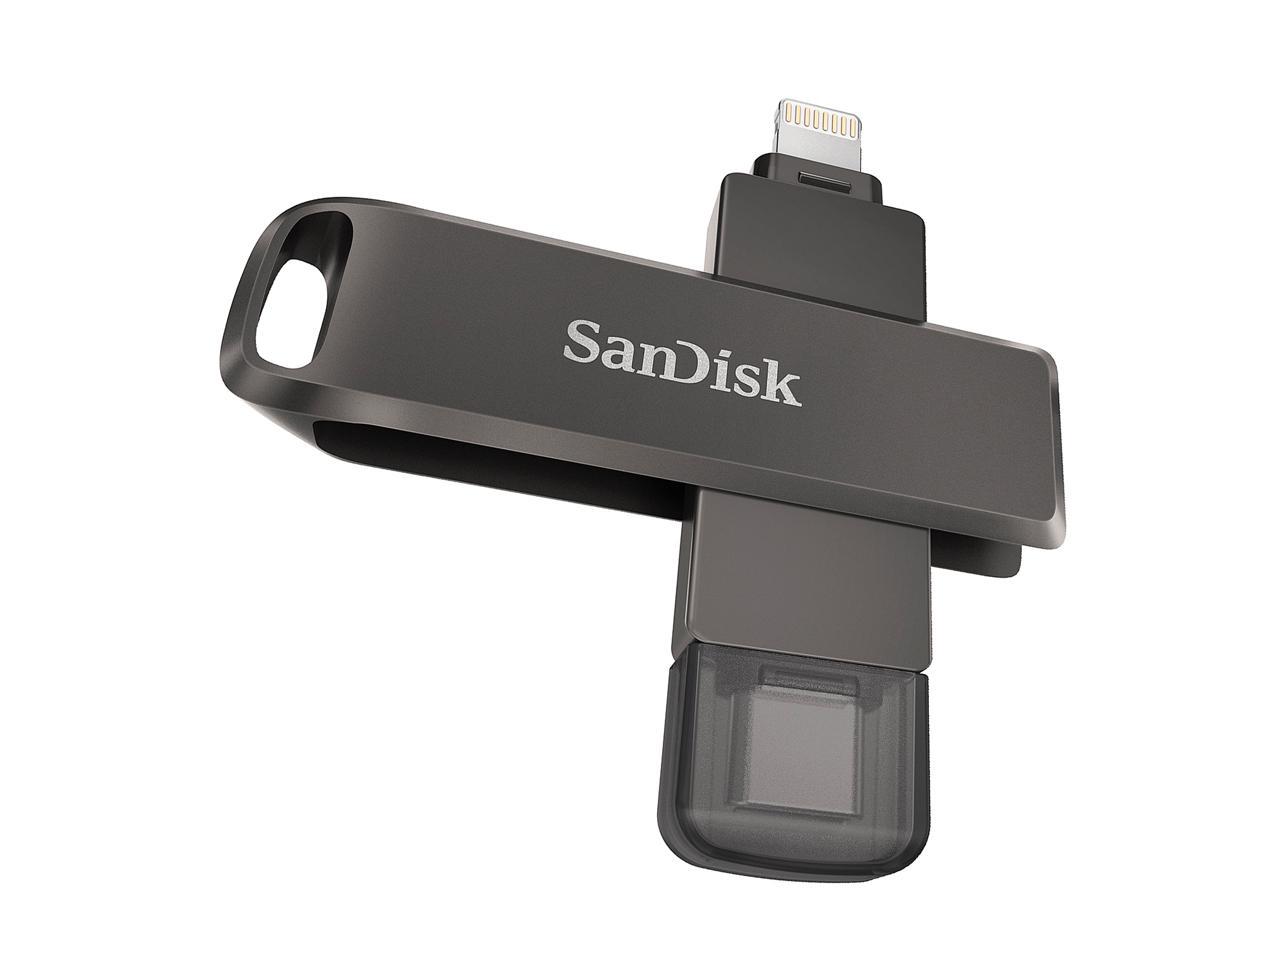 送料無料 SanDisk サンディスク SDIX90N-128G-GN6NE 128GB iXpand  iPhone iPad PC用 Lightning   USB3.1-A キャップ式 海外リテール